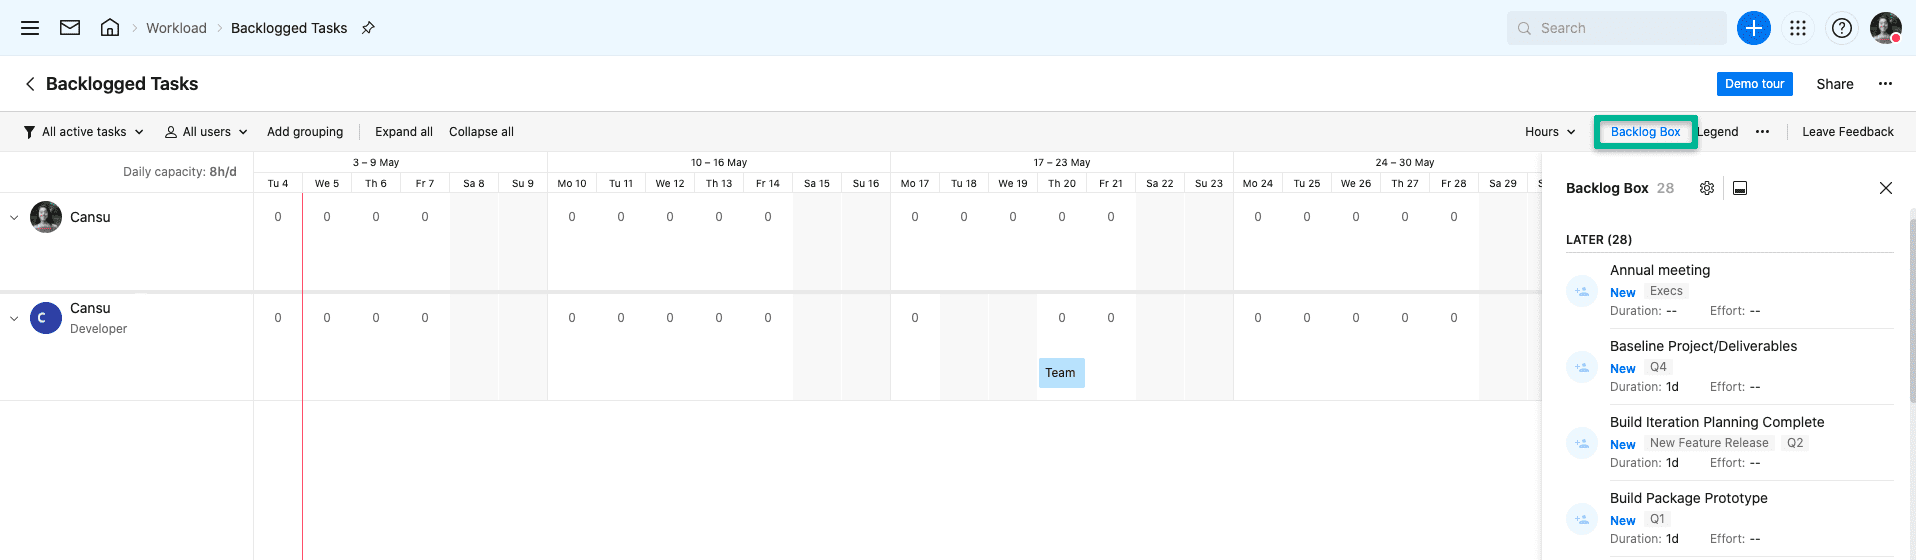 Screenshot of backlogged tasks in Wrike